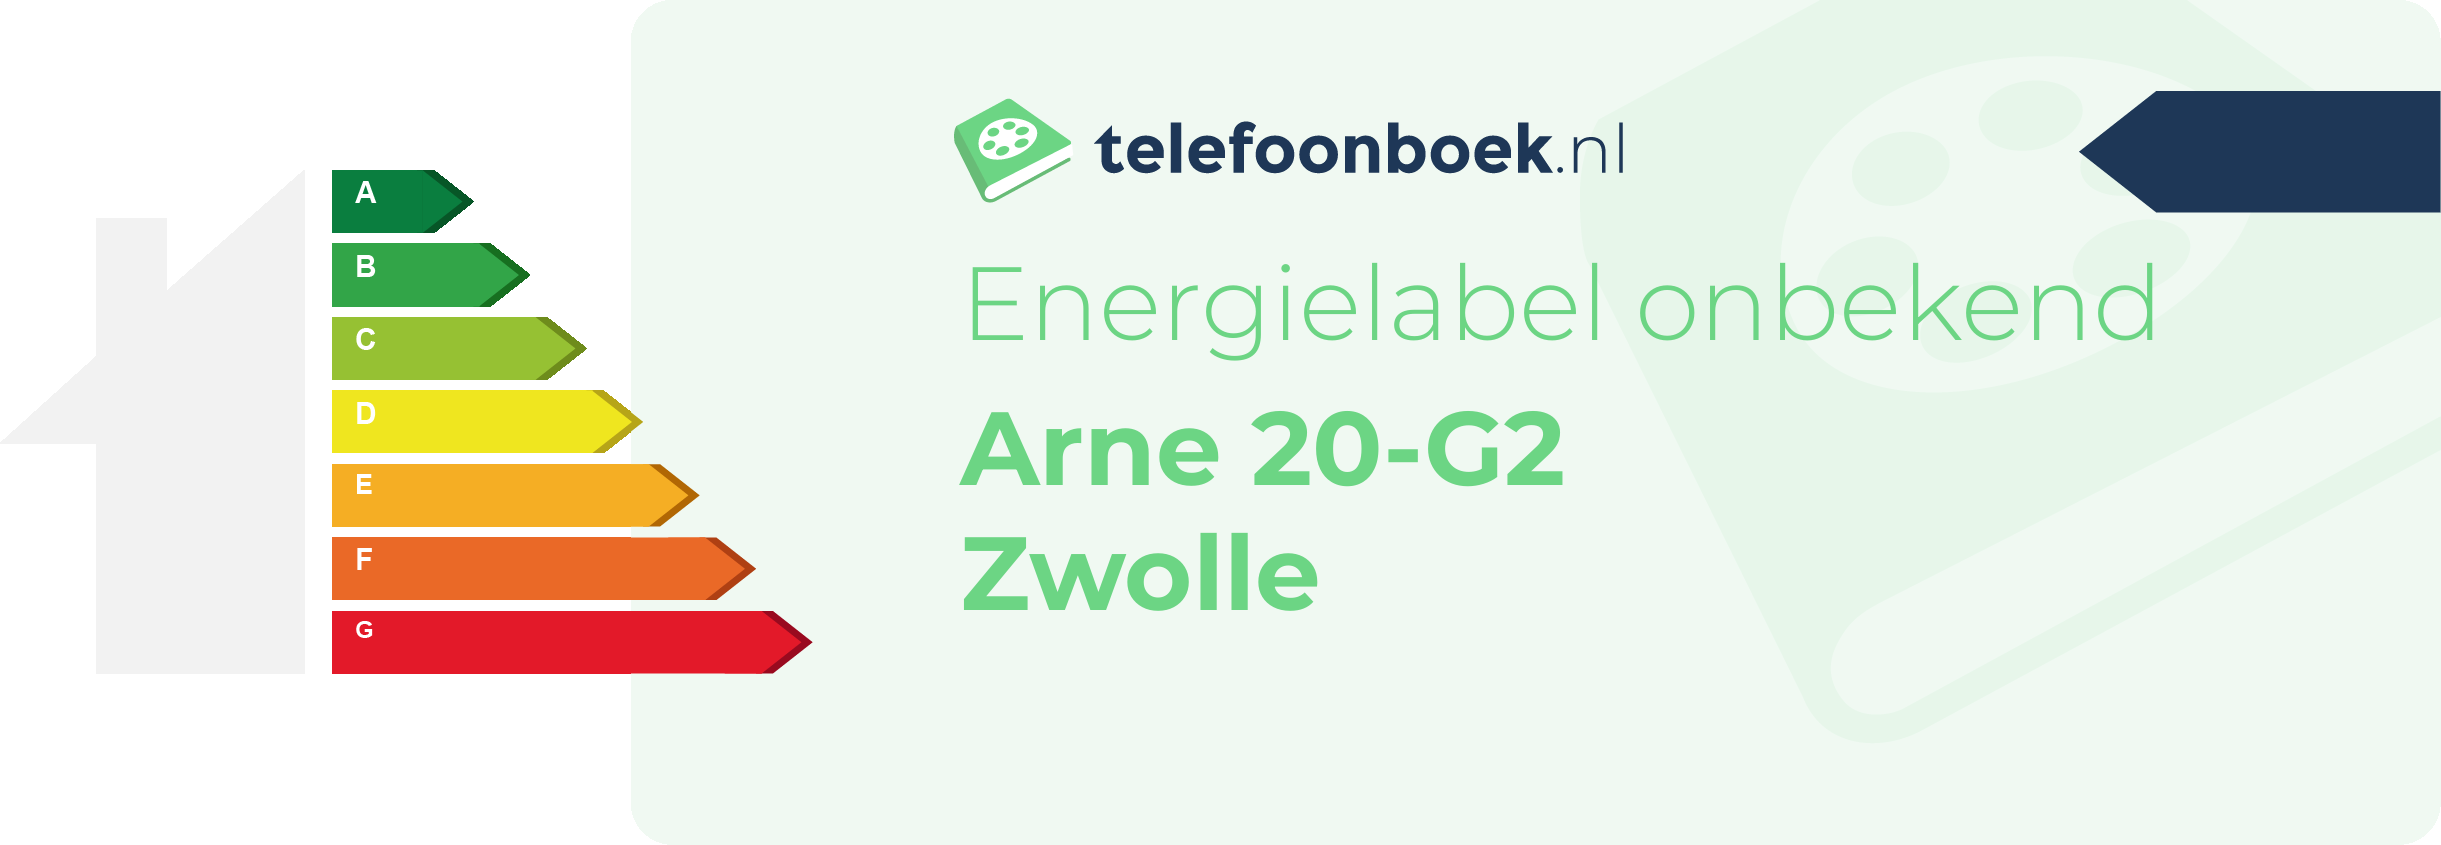 Energielabel Arne 20-G2 Zwolle